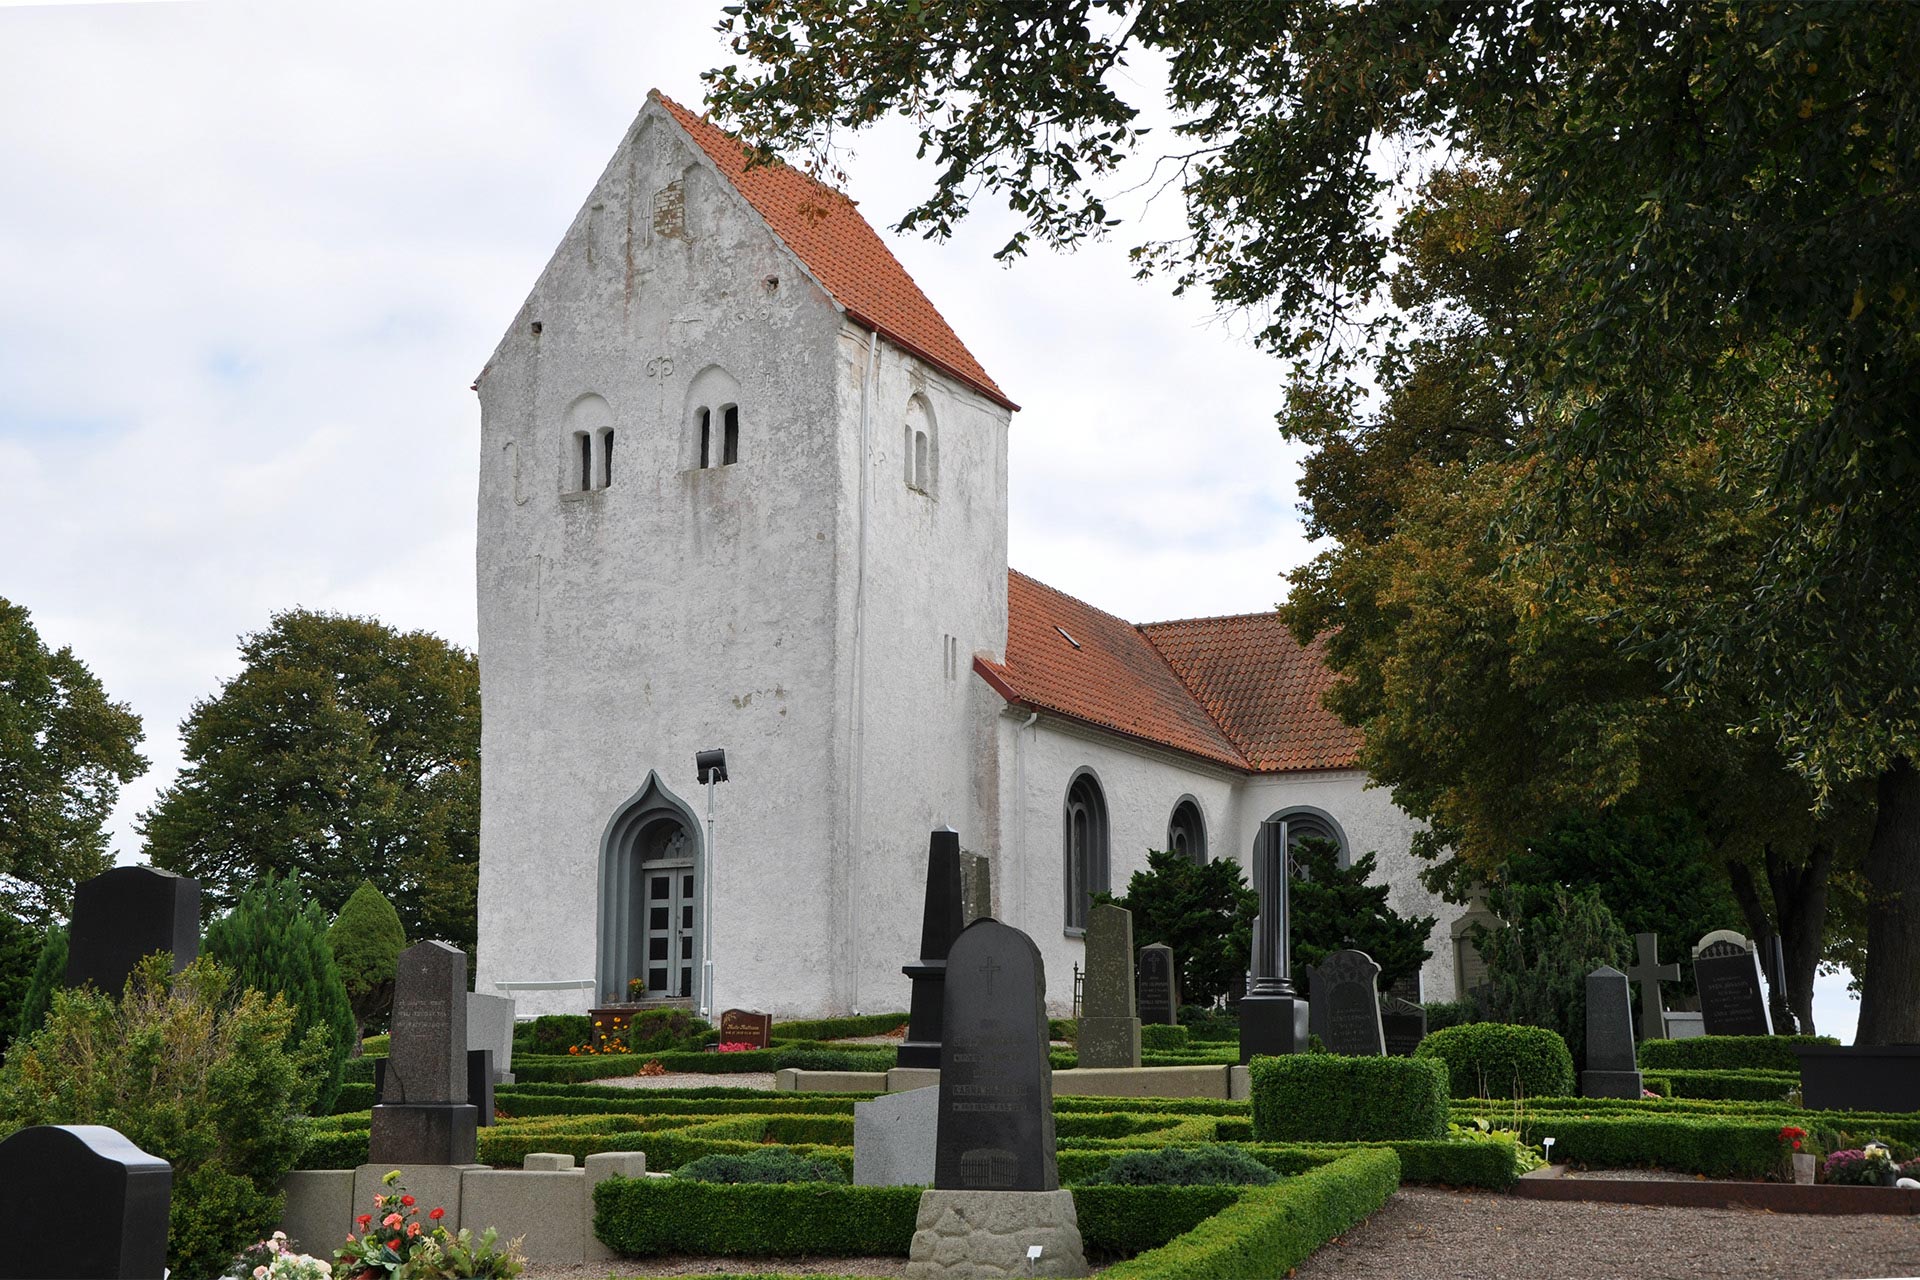 Den putsade och vitkalkade Bromma kyrka från 1100-talet ligger på en höjd i utkanten av Bromma gamla kyrkby, några km söder om Sövestad. 